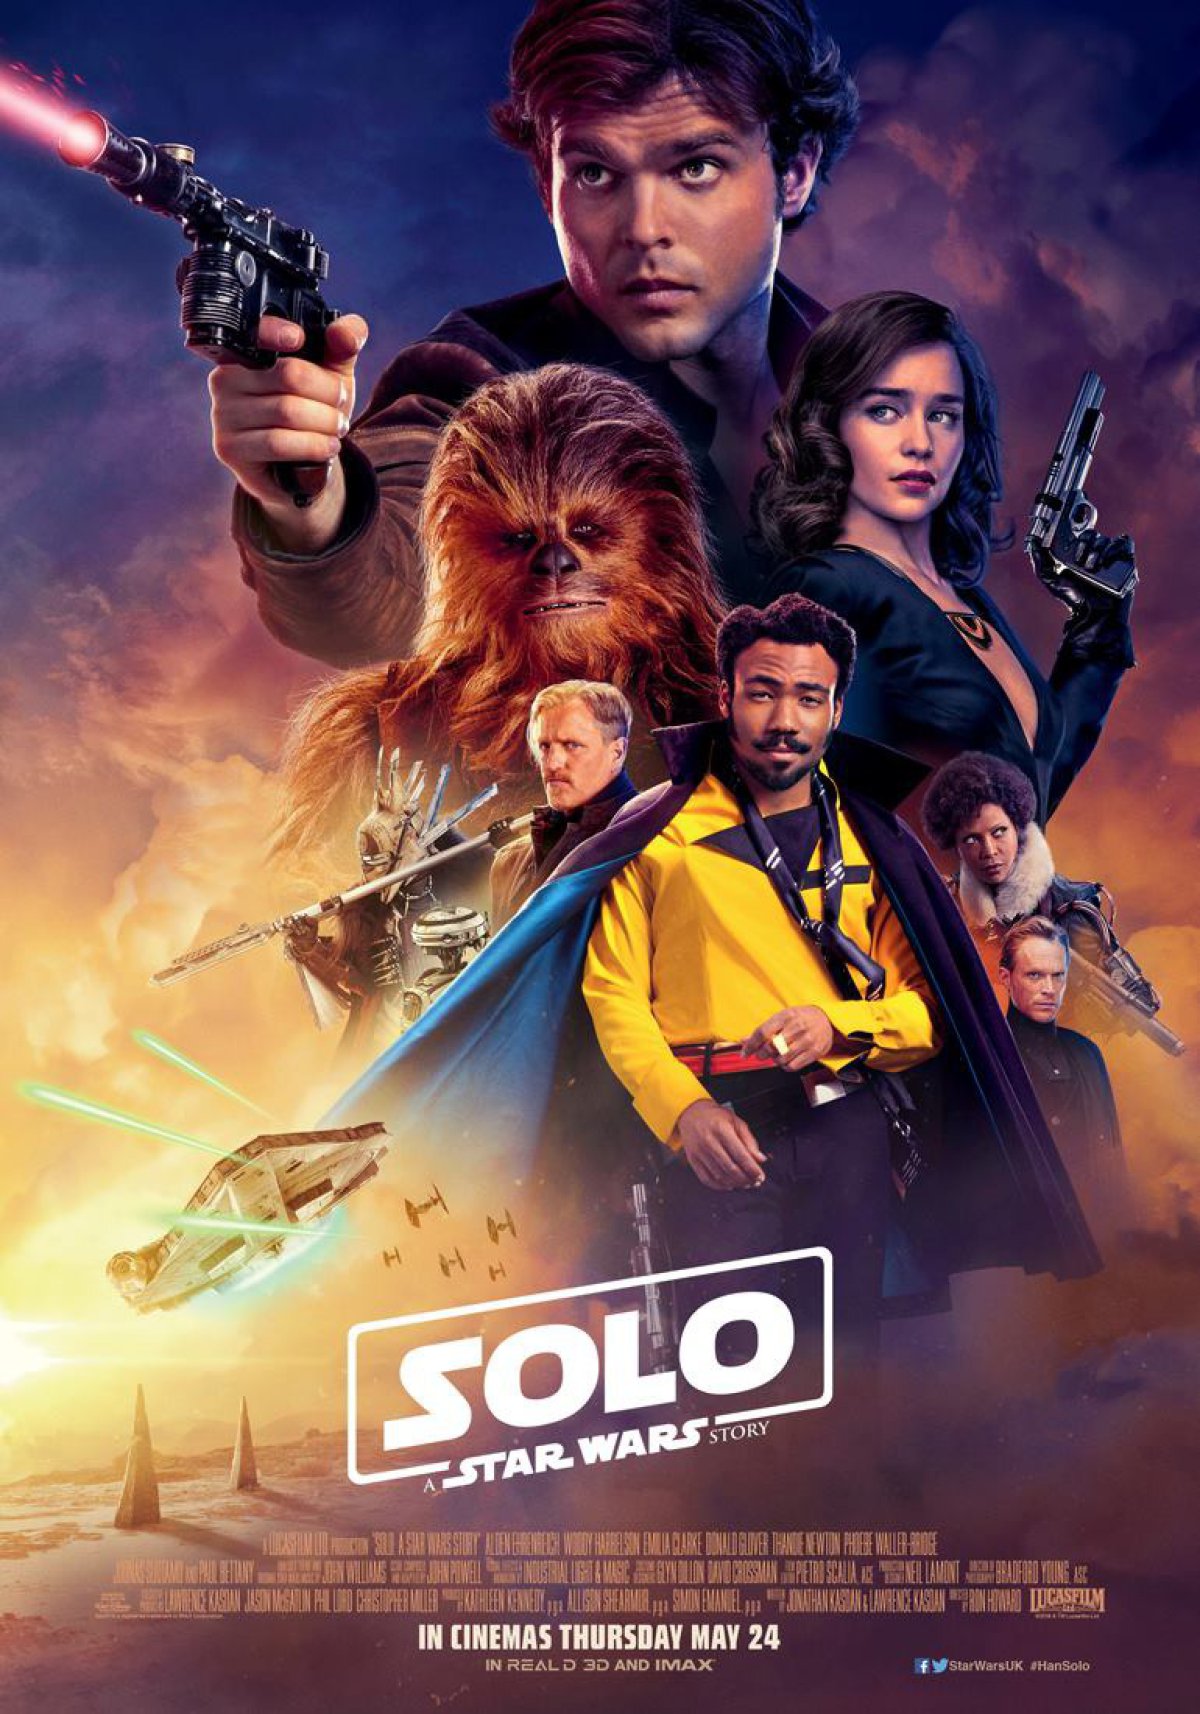 Han Solo: Una historia de Star Wars (2018)